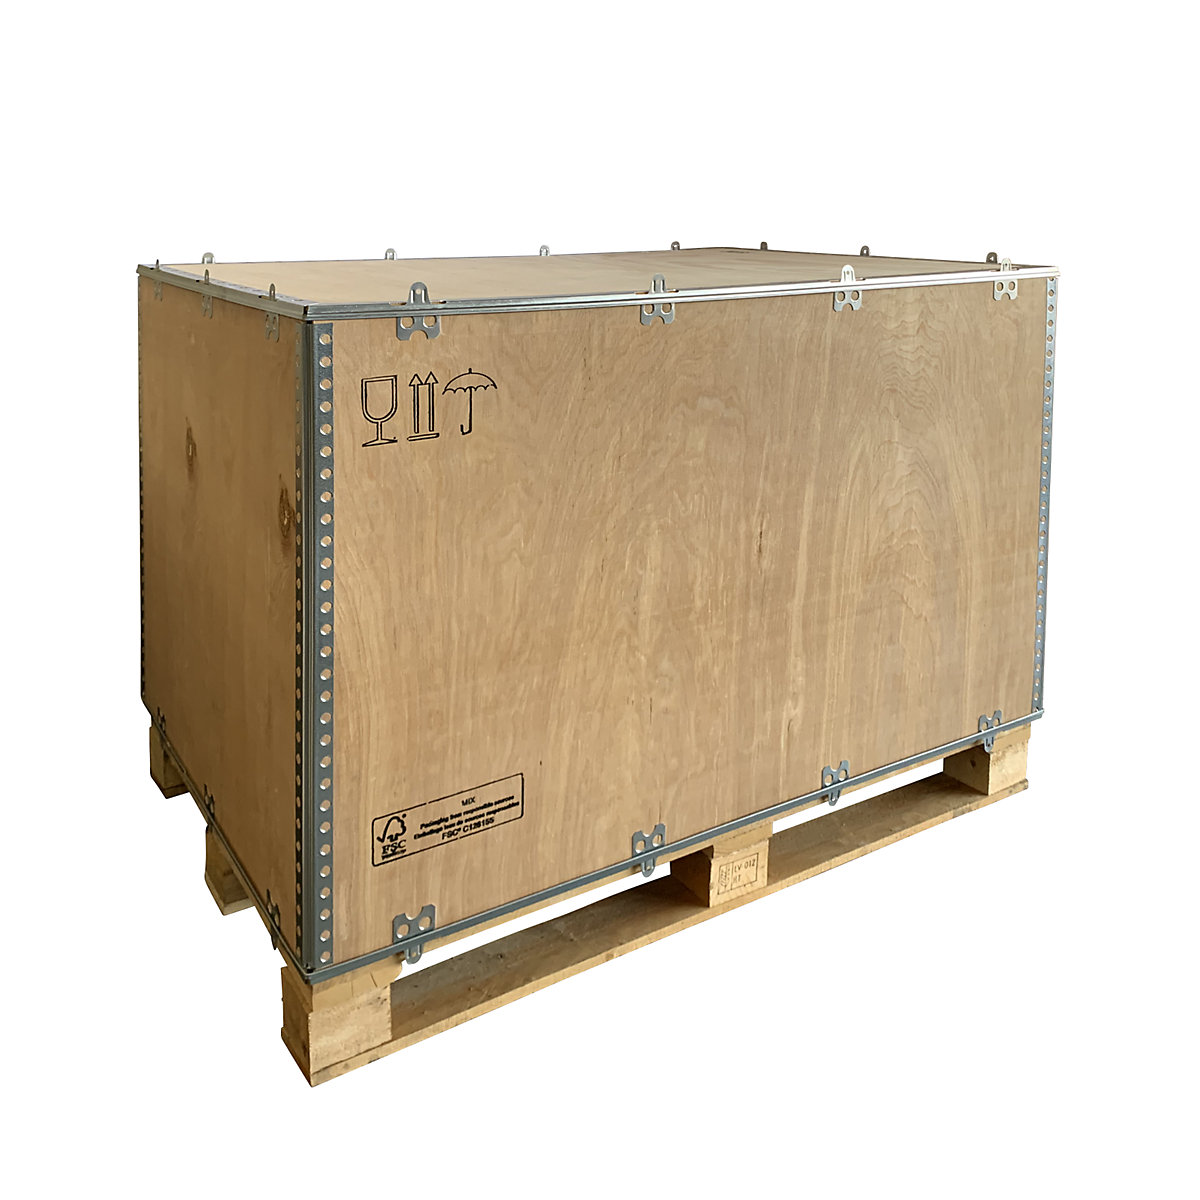 Caja plegable de madera, estándar, L x A x H 1180 x 780 x 750 mm, a partir de 1 unid.-3